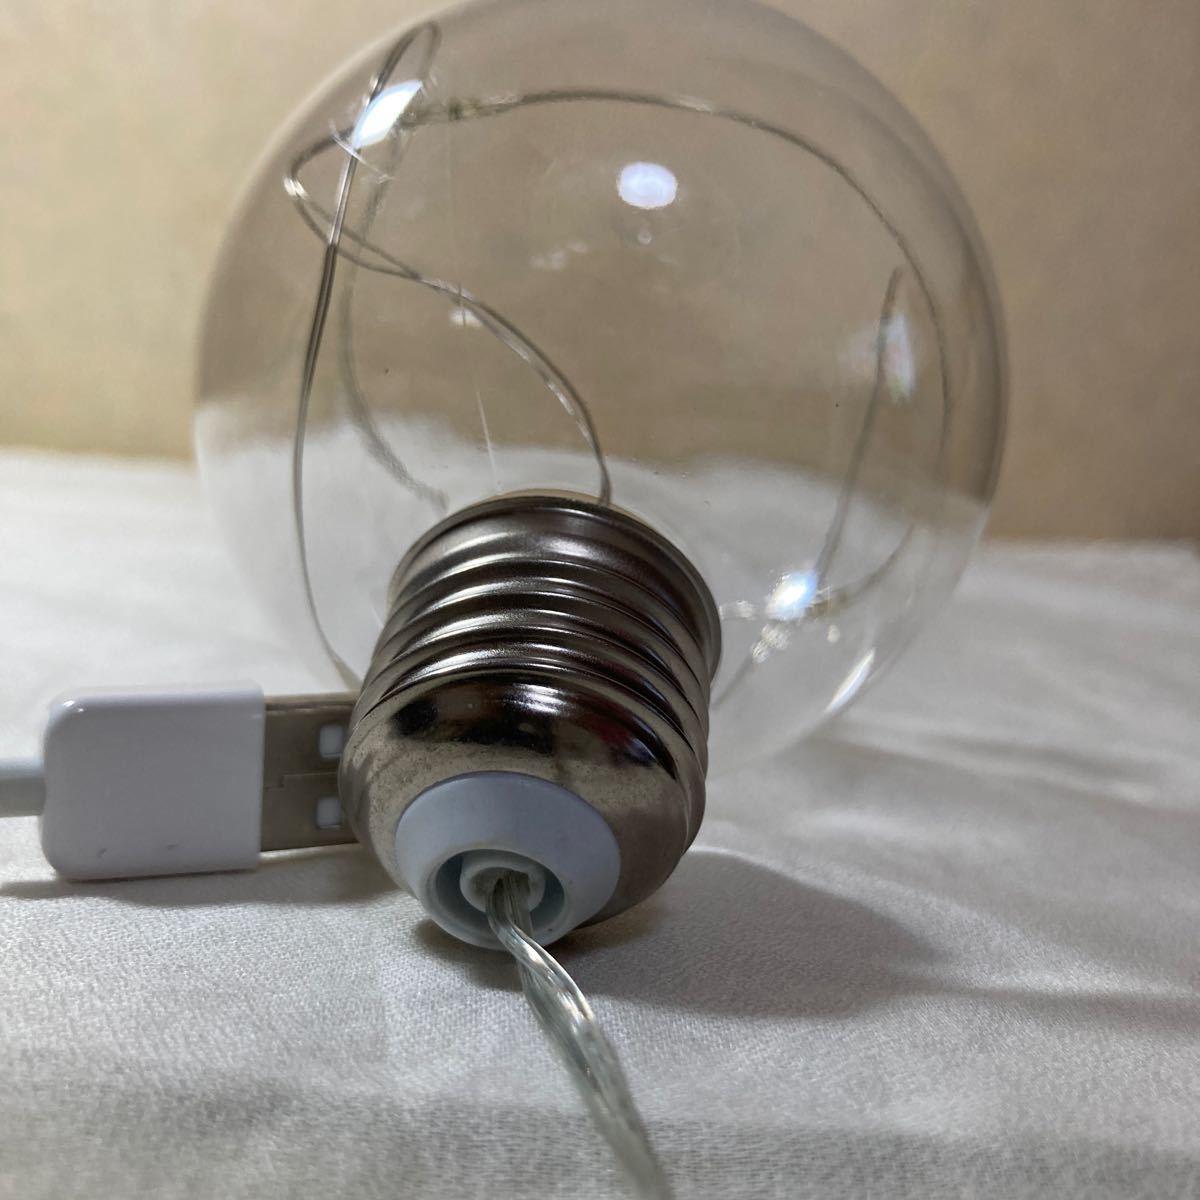 7個 USB 電球 ライト フィラメント型 エジソン電球 照明 省エネ イルミネーション 電球型 USBライト 可愛い インテリア 沢山 おしゃれ PC_画像6